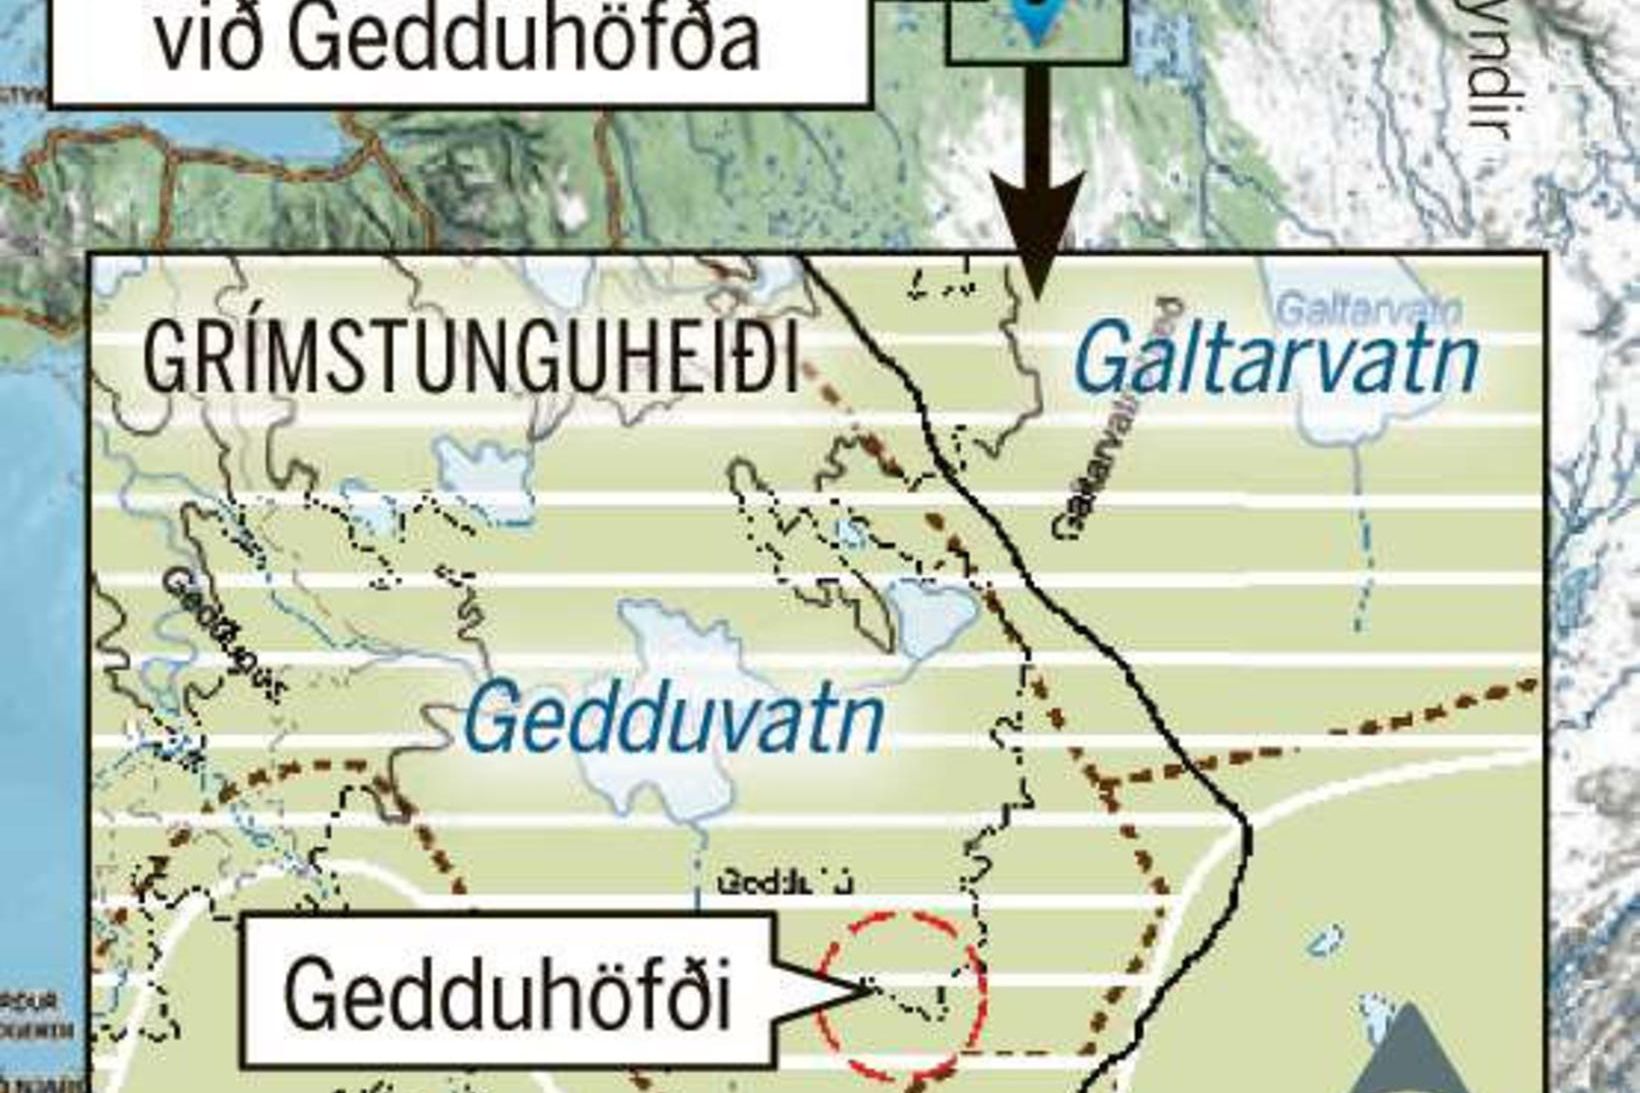 Fyrirhugaður gangnamannaskáli við Gedduhöfða.